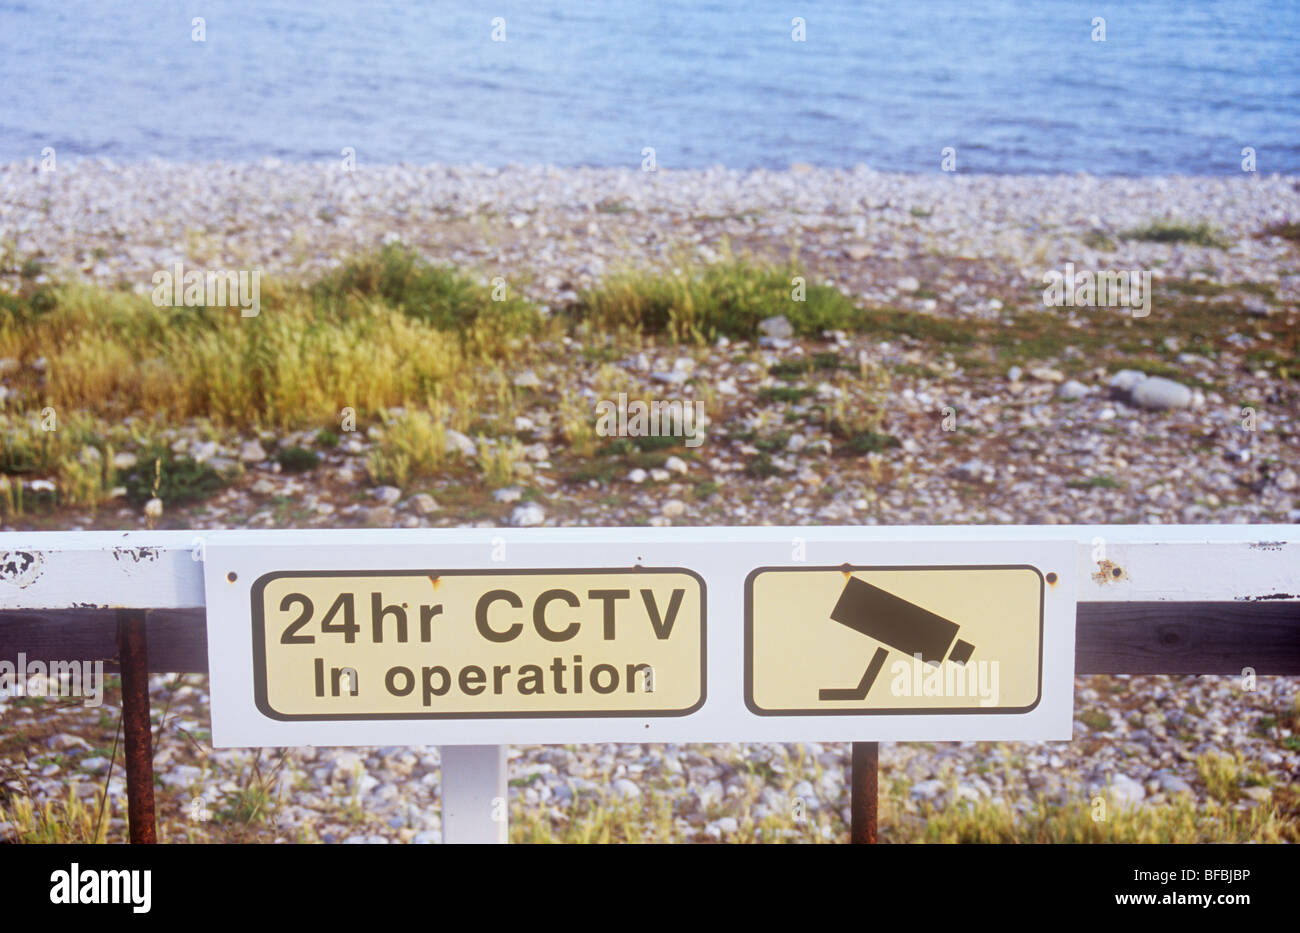 Grobe steinigen Strand mit Unkraut und Meer hinaus mit rostigen Tor und ikonische Bild von Kamera und Warnung 24hr CCTV in Betrieb Stockfoto